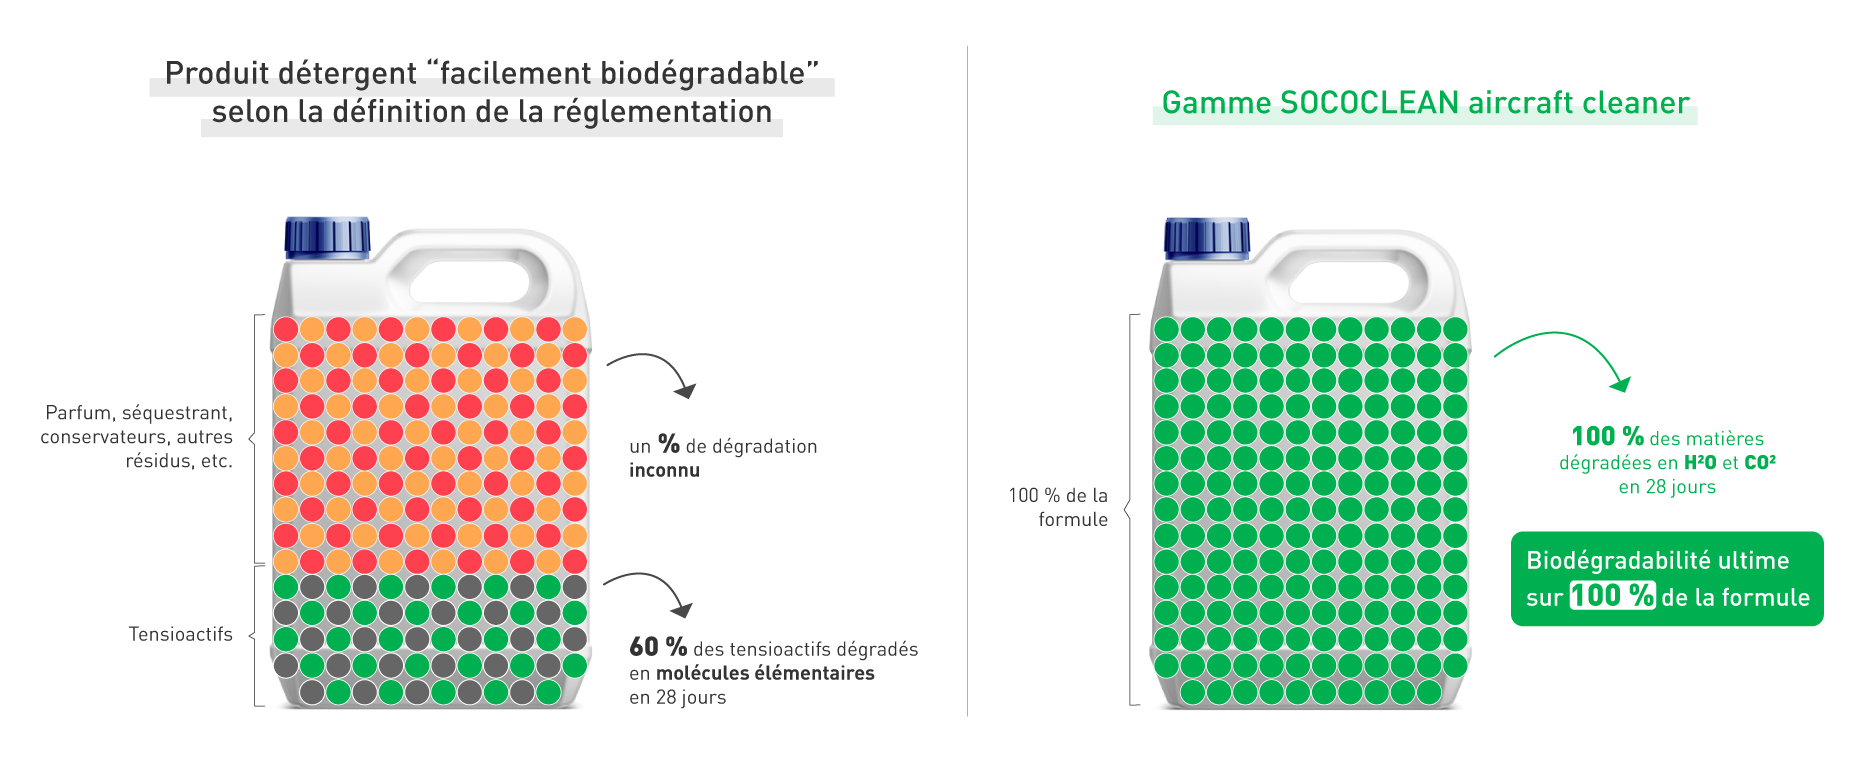 Comparaison entre les produits concurrents dits "biodégradables" et nos nettoyants biodégradable sur 100 % de la formule